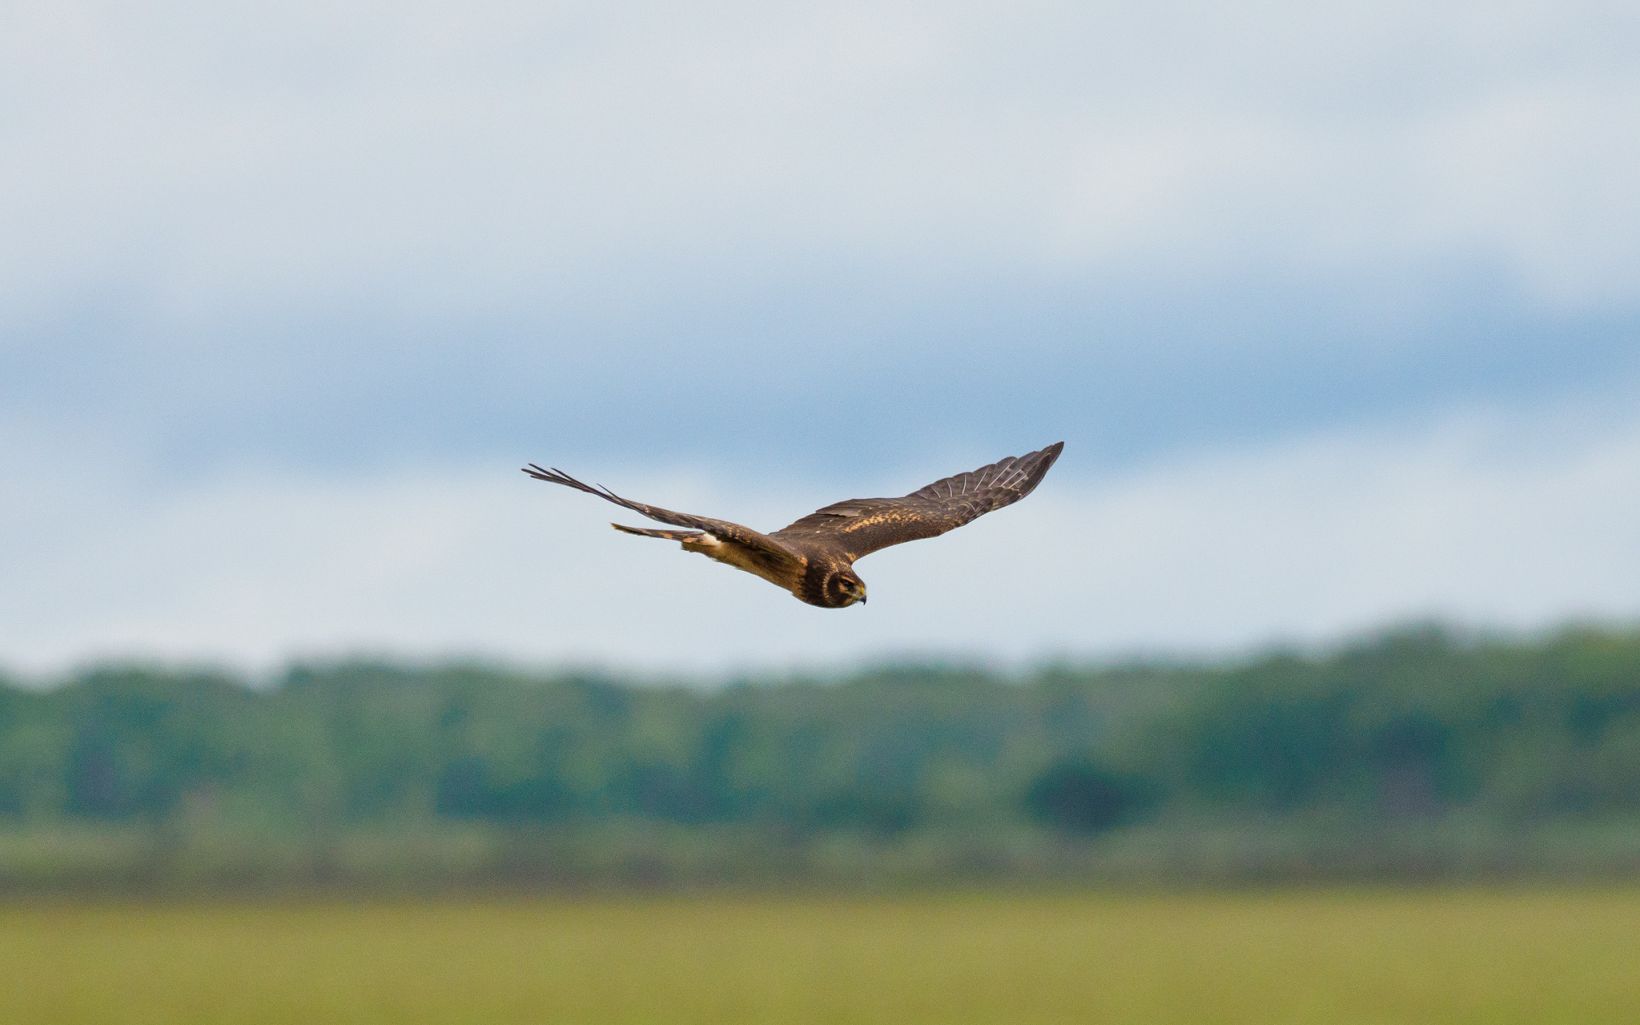 A hawk flies over a grassy field.